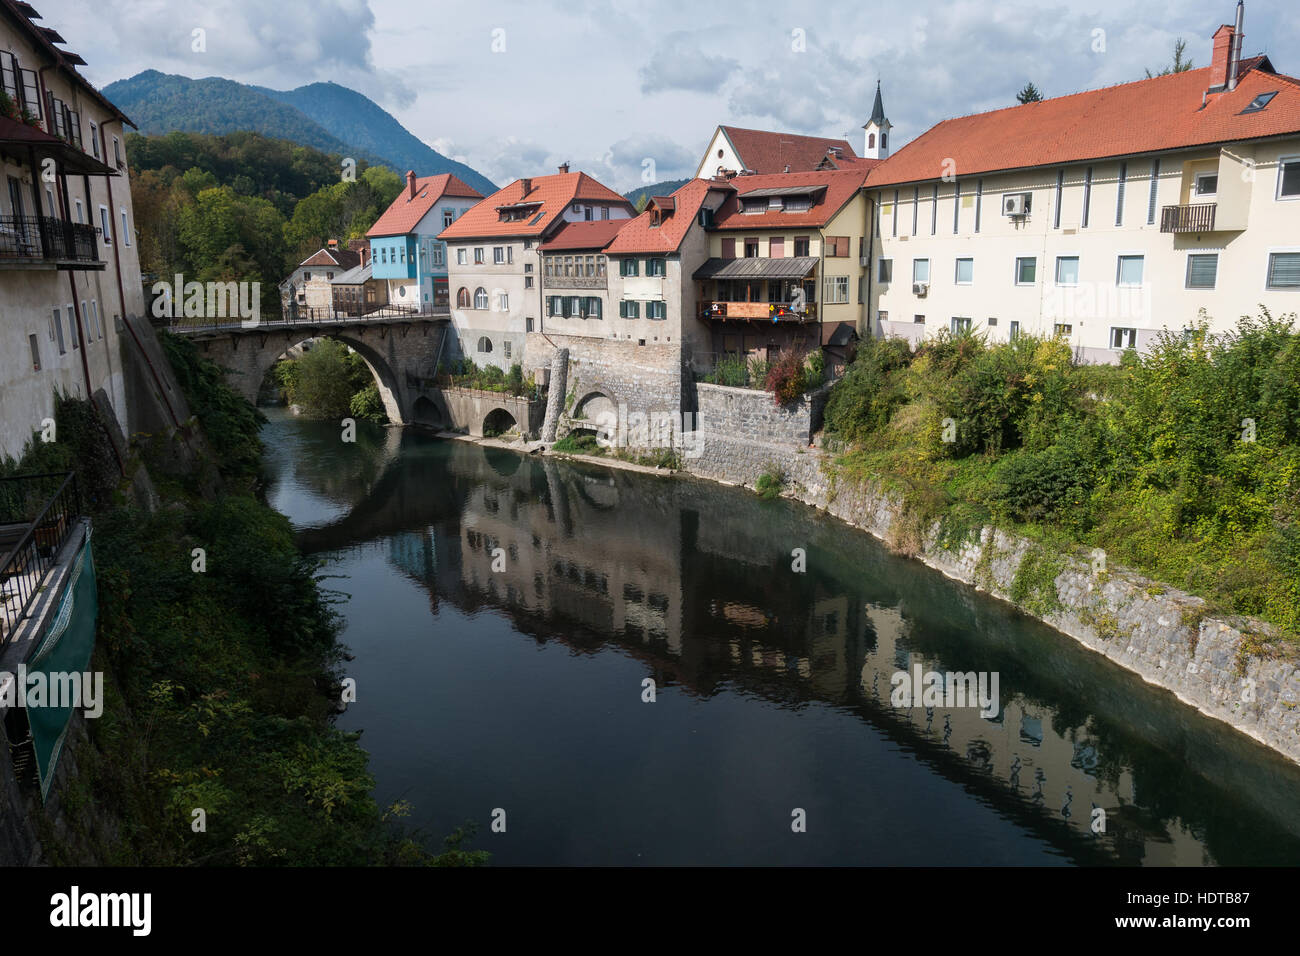 Fluss, der durch die historische Altstadt von Škofja Loka (Slowenien). Brücke über den Fluss und Reflexion von Gebäuden im Wasser. Stockfoto